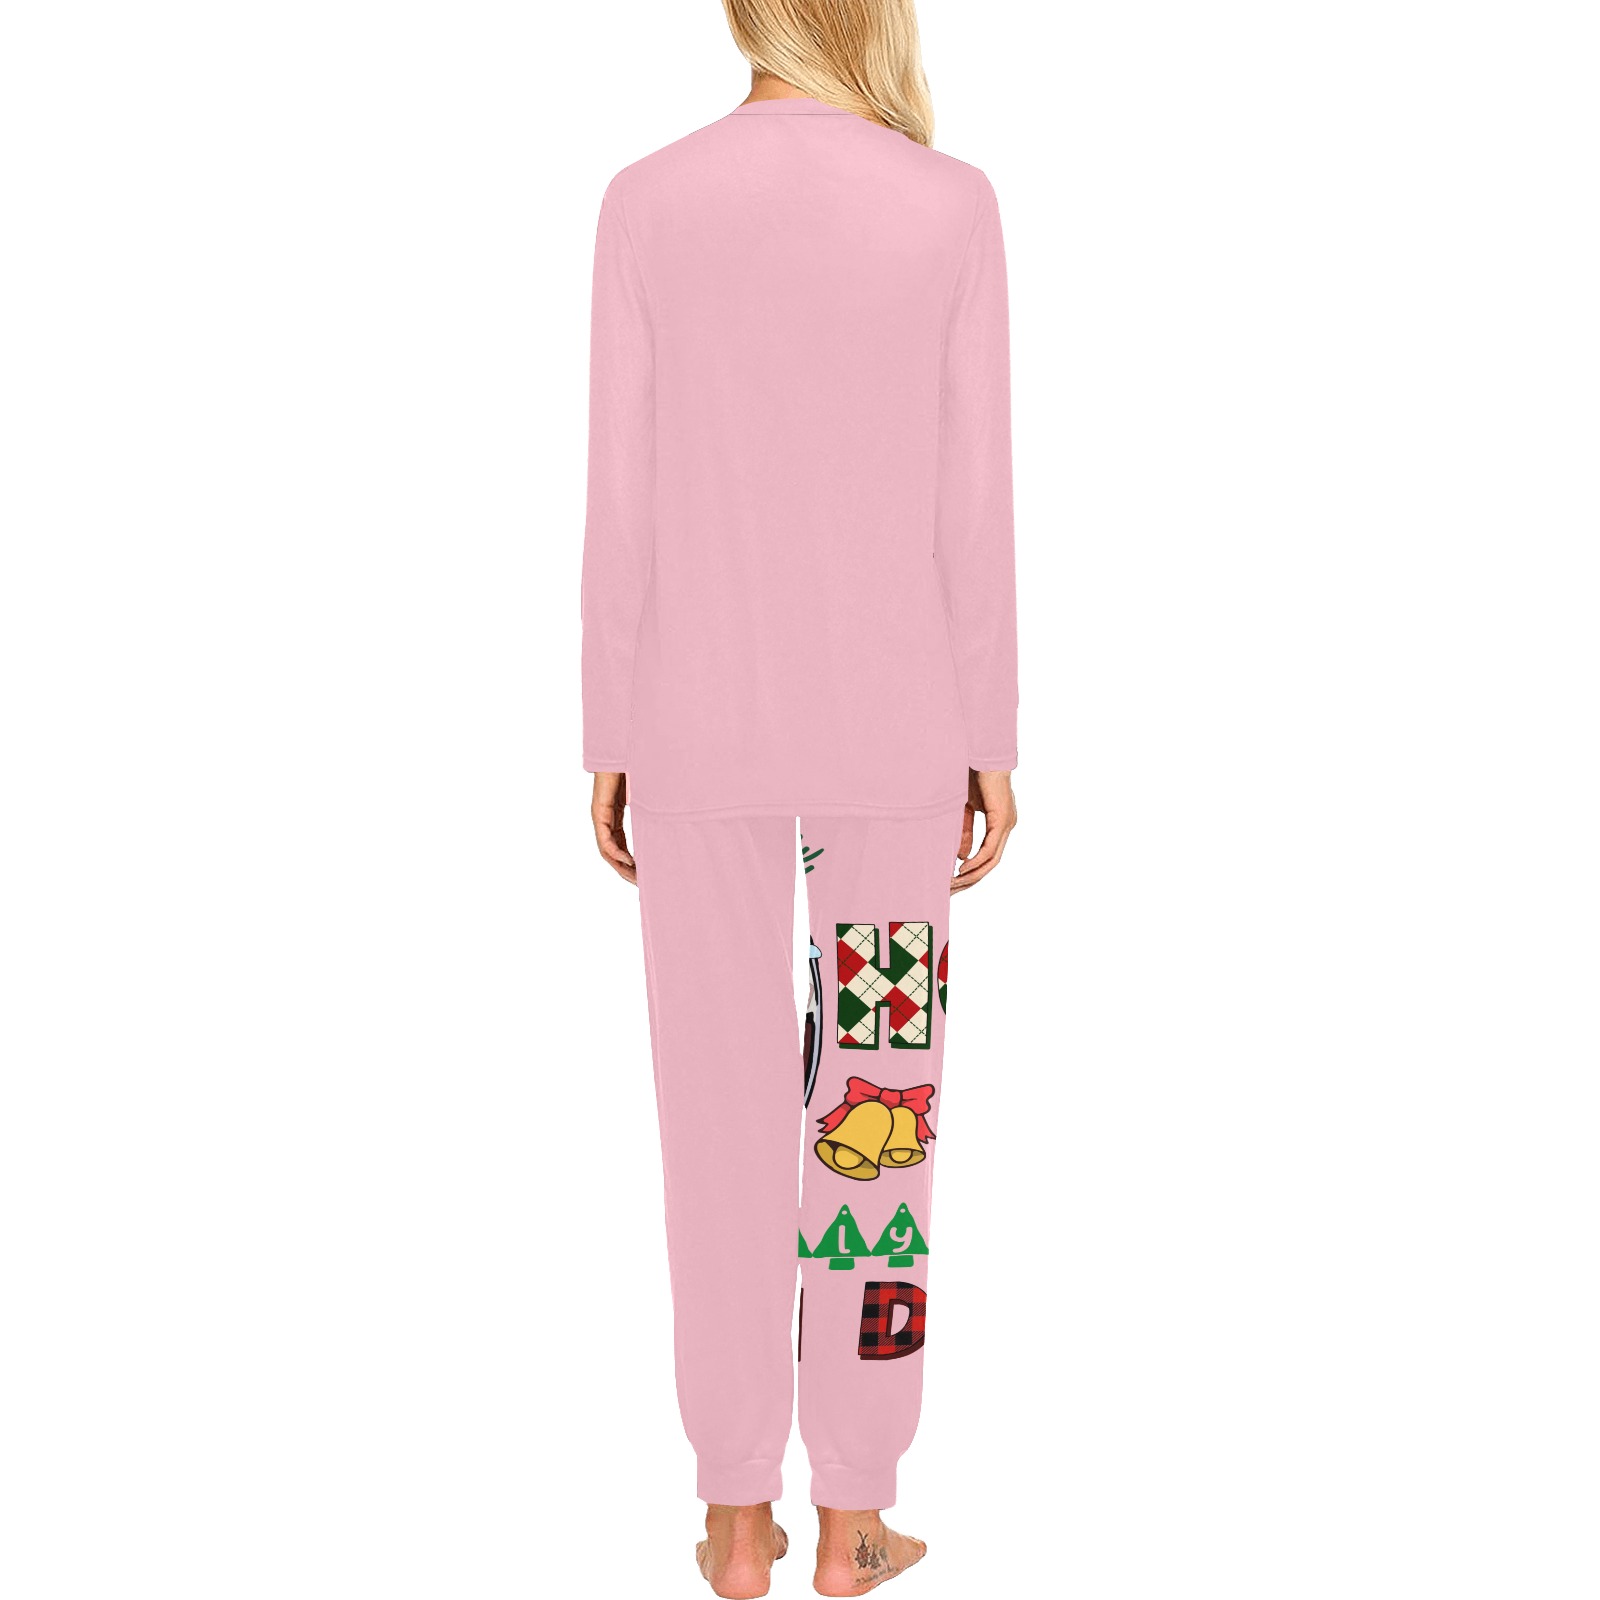 Ho Ho Holy Sheet I'm Drunk (P) Women's All Over Print Pajama Set